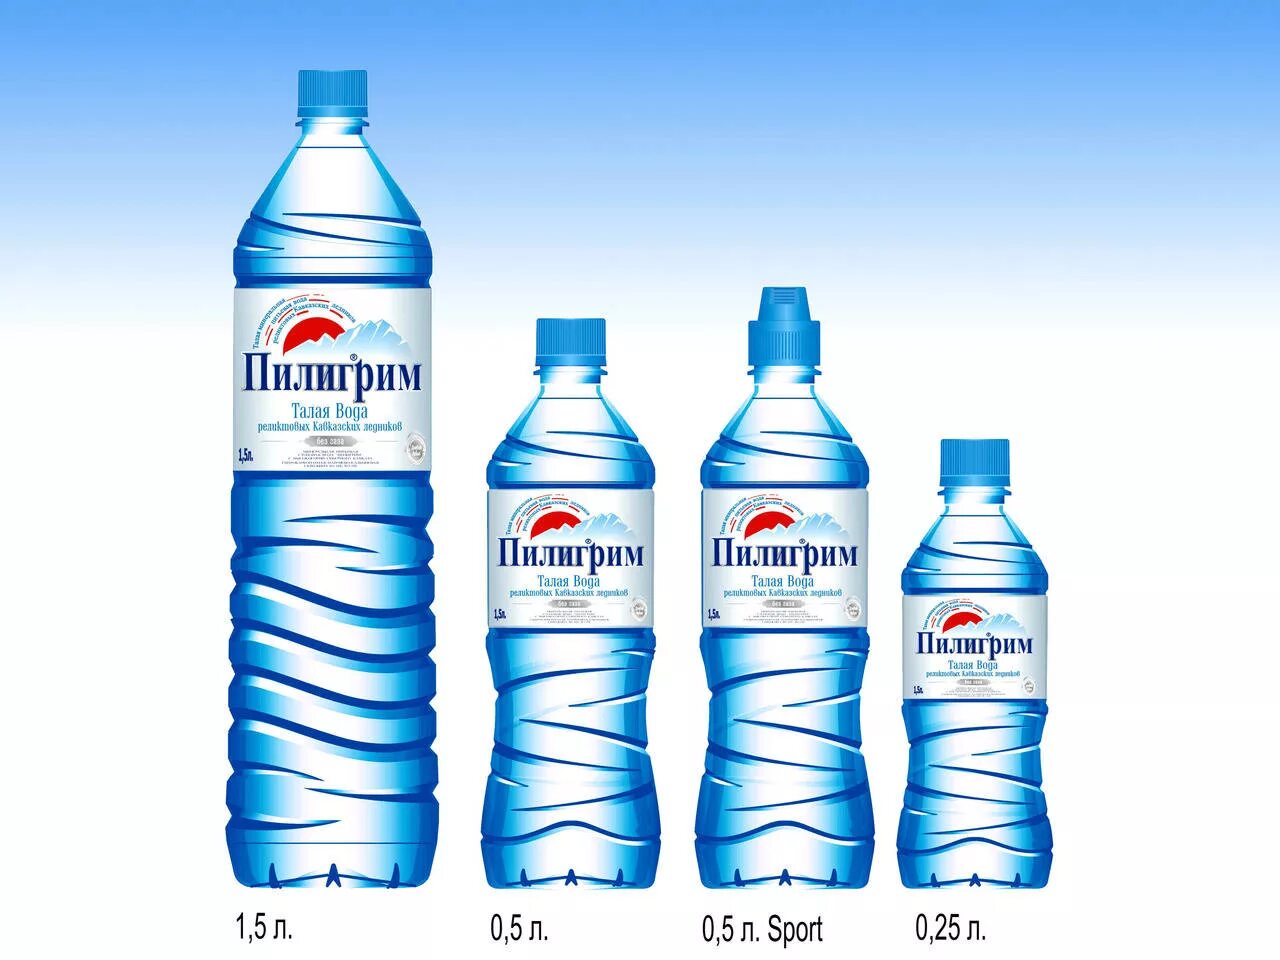 Маленькая вода. 1,5 Литров воды. 1 Литровая бутылка воды. Бутылка воды 1.5 литра. Популярные марки воды.